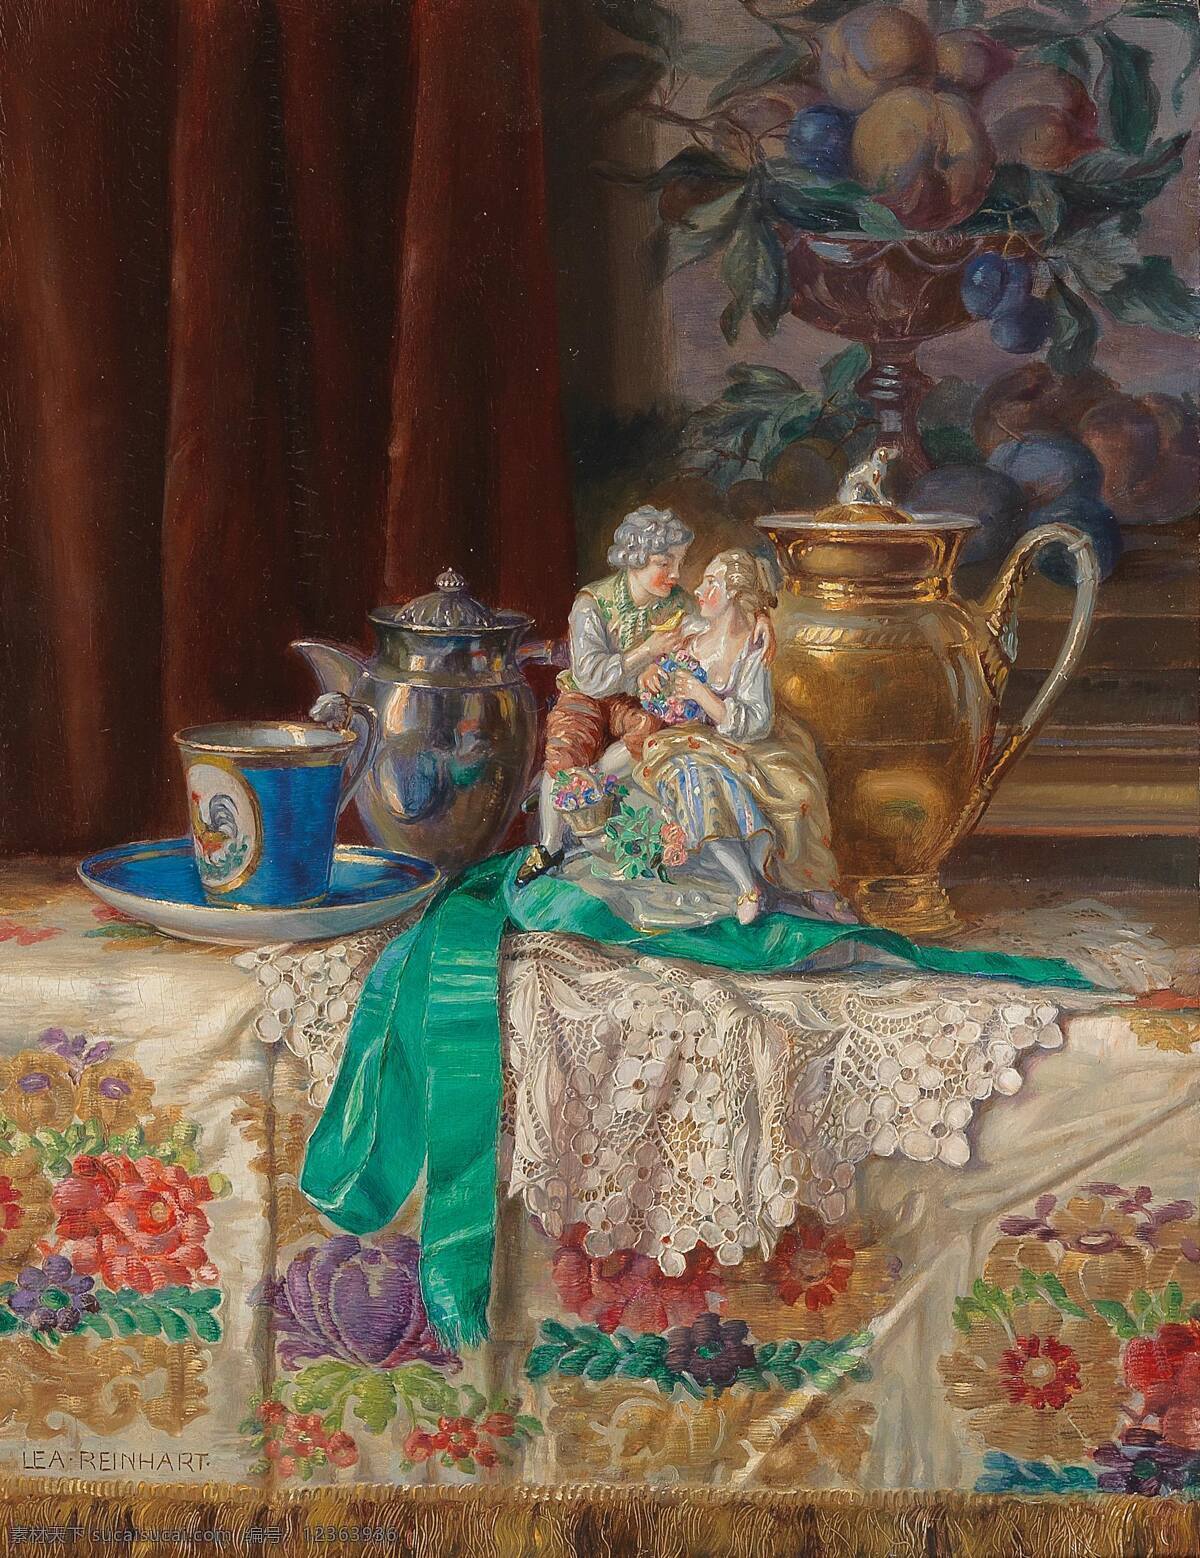 利 莱茵 哈特 作品 德国画家 静物油画 室内 花色桌布 珐琅彩茶具 一对情侣瓷像 19世纪油画 油画 文化艺术 绘画书法